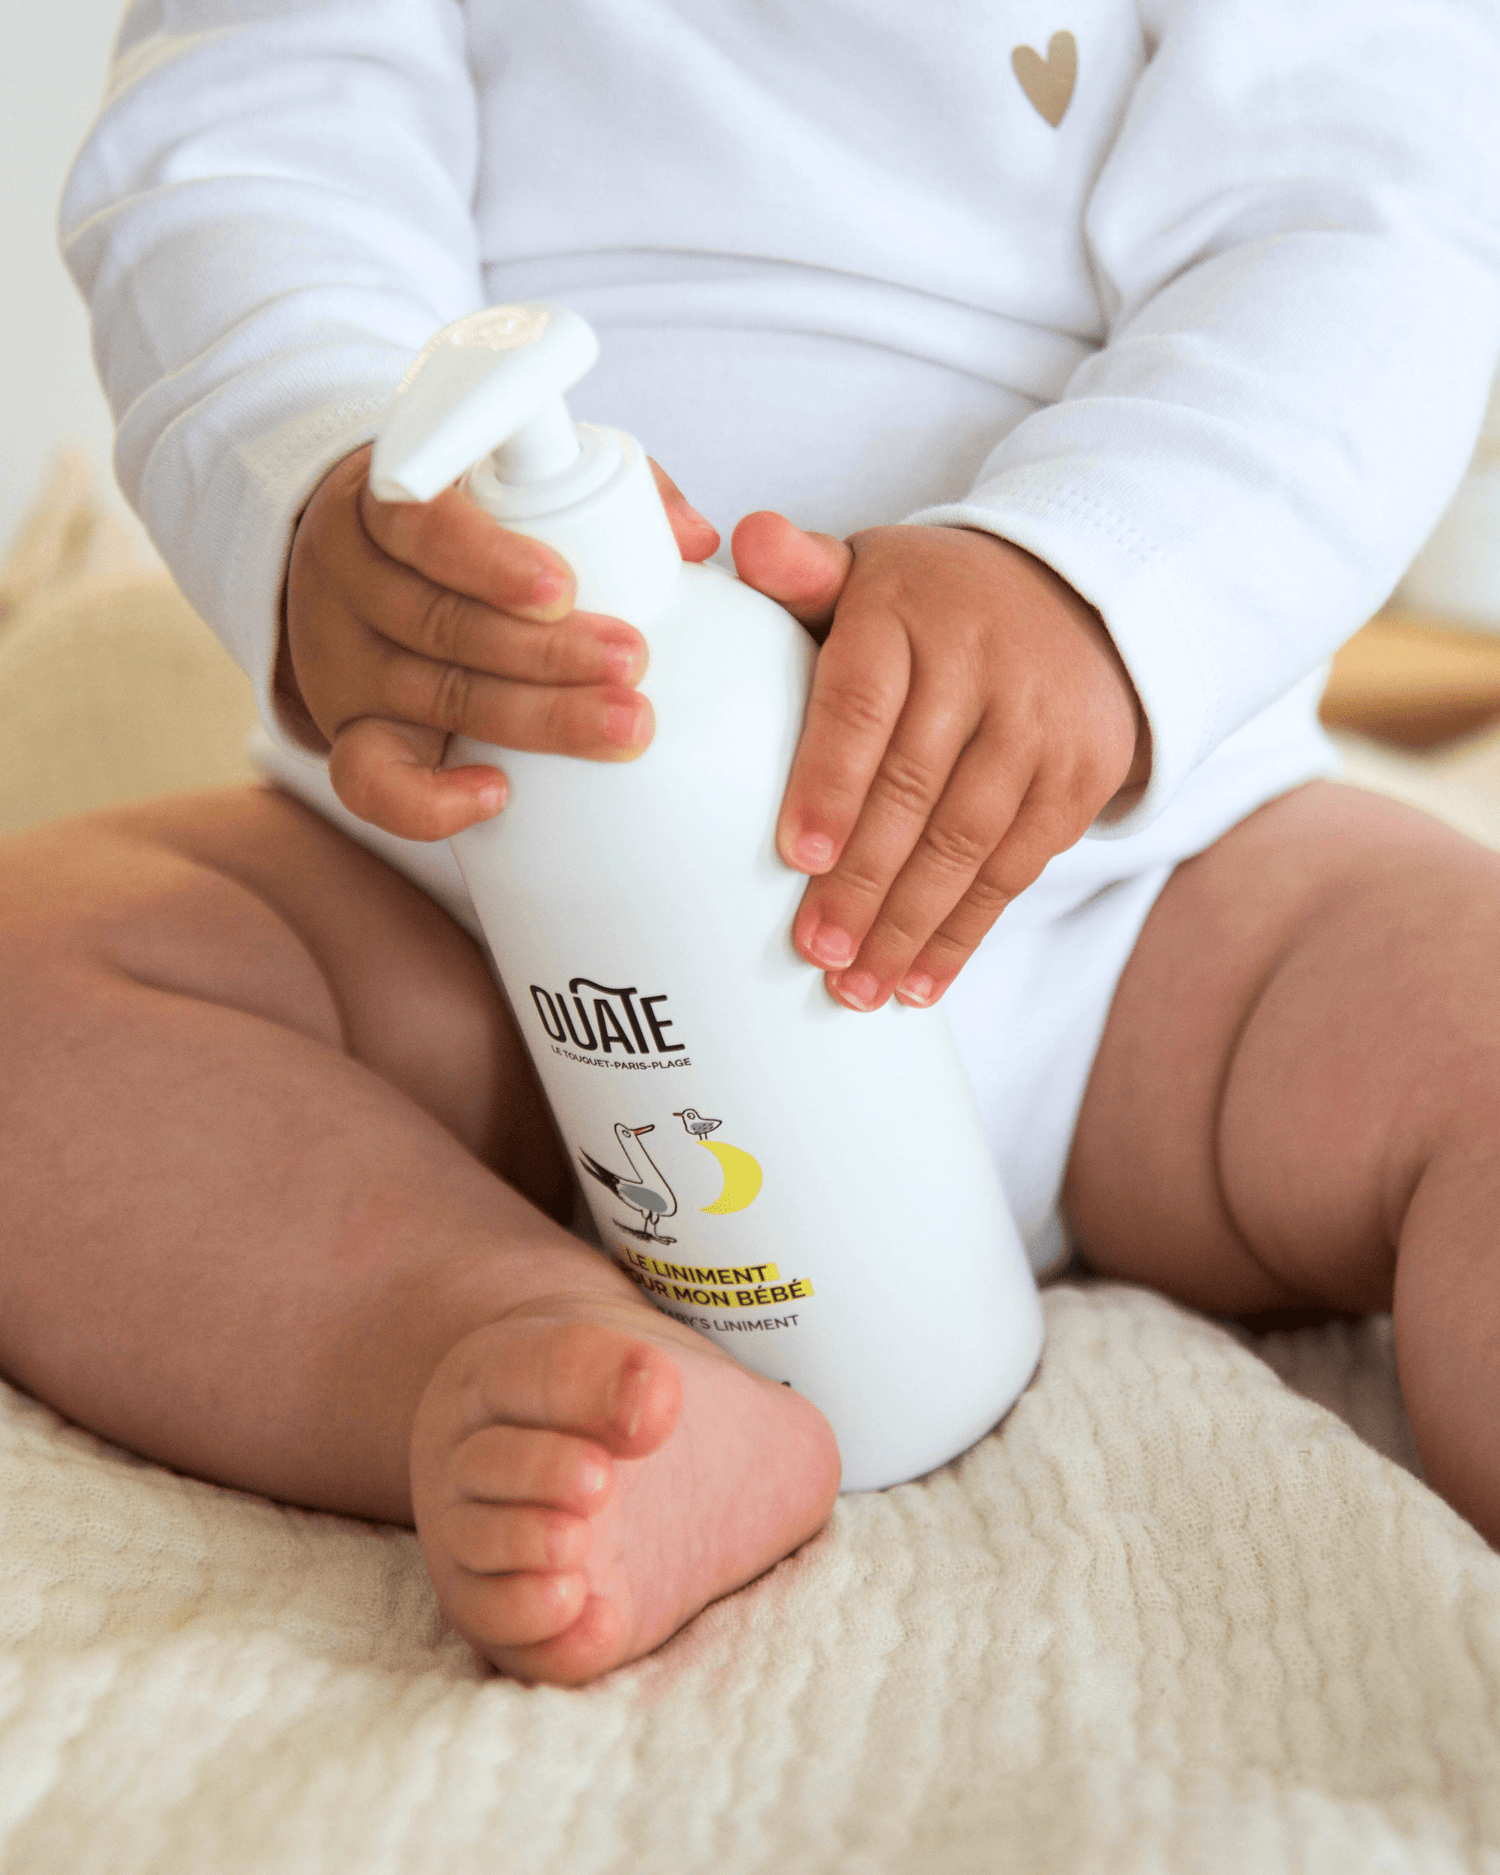 Liniment naturel, soin du change pour bébé à l'huile d'olive